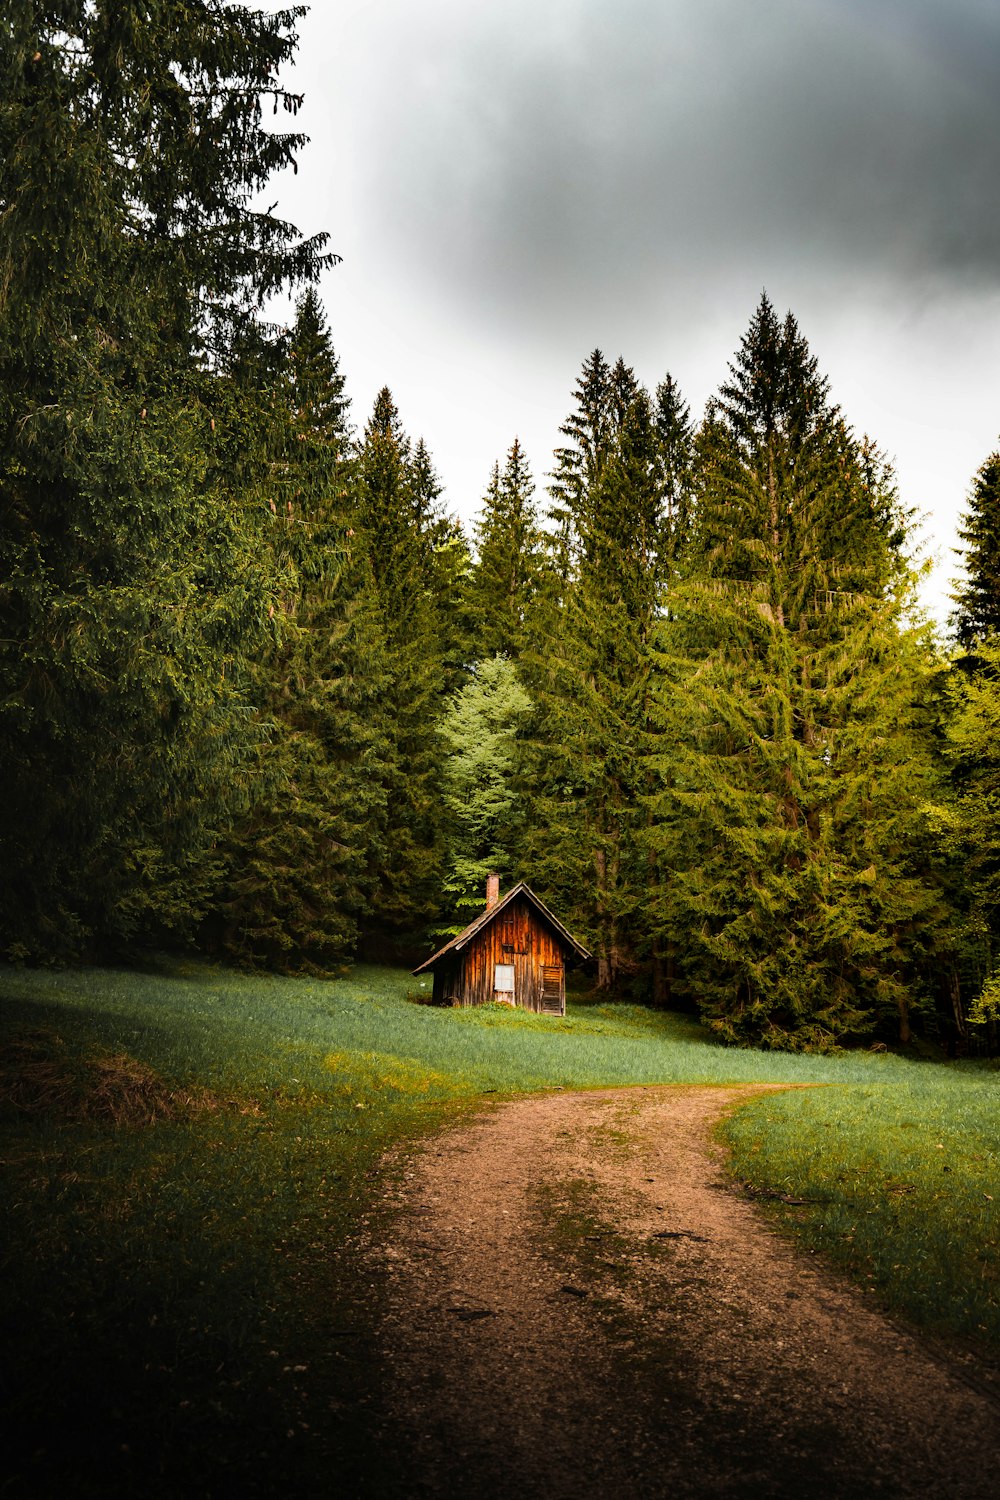 Casa de madera marrón en medio de árboles verdes